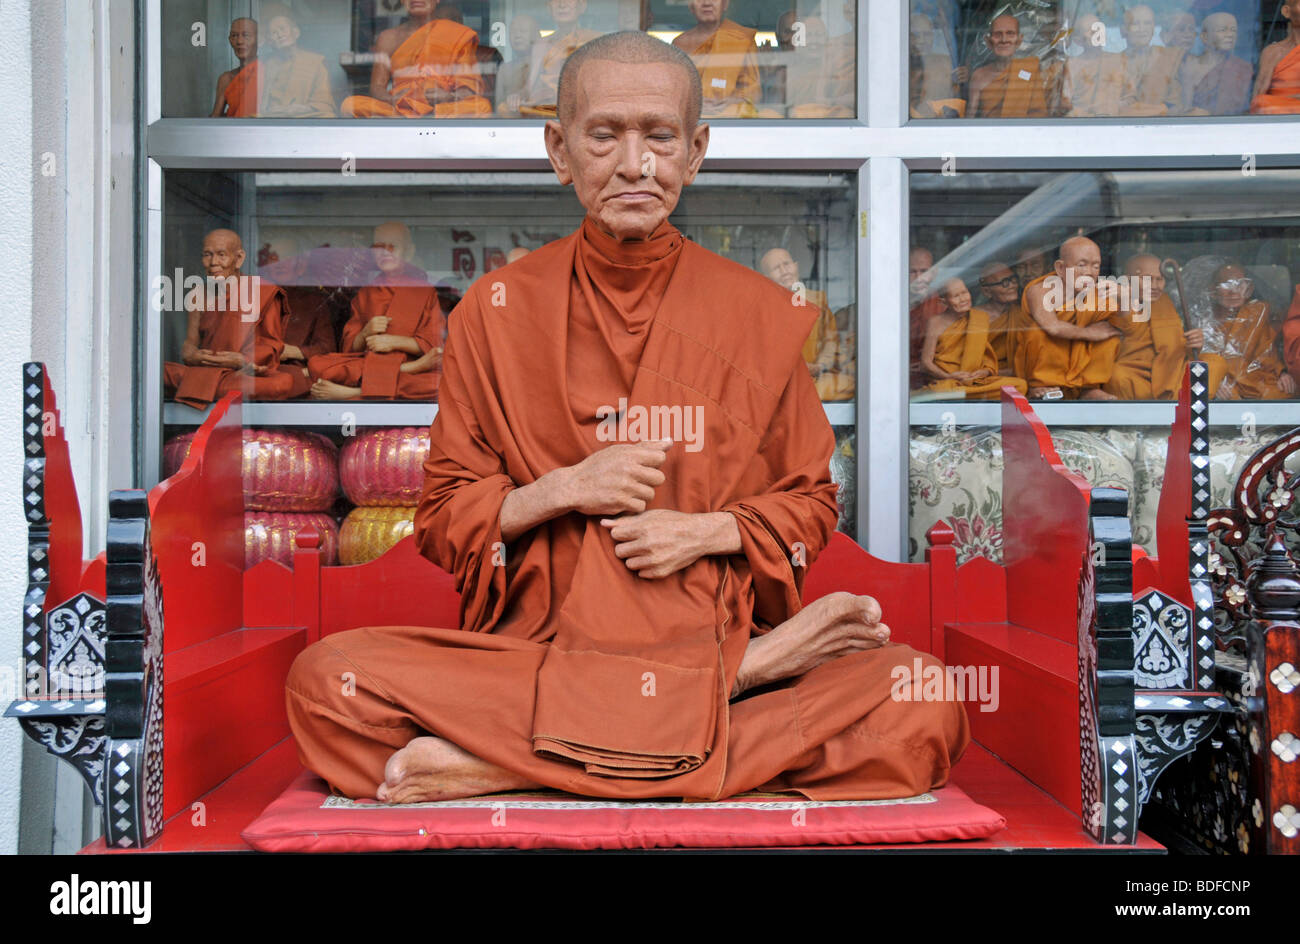 Täuschend lebensechte Mönch Figur, Bamrung Muang Road, Bangkok, Thailand, Asien Stockfoto